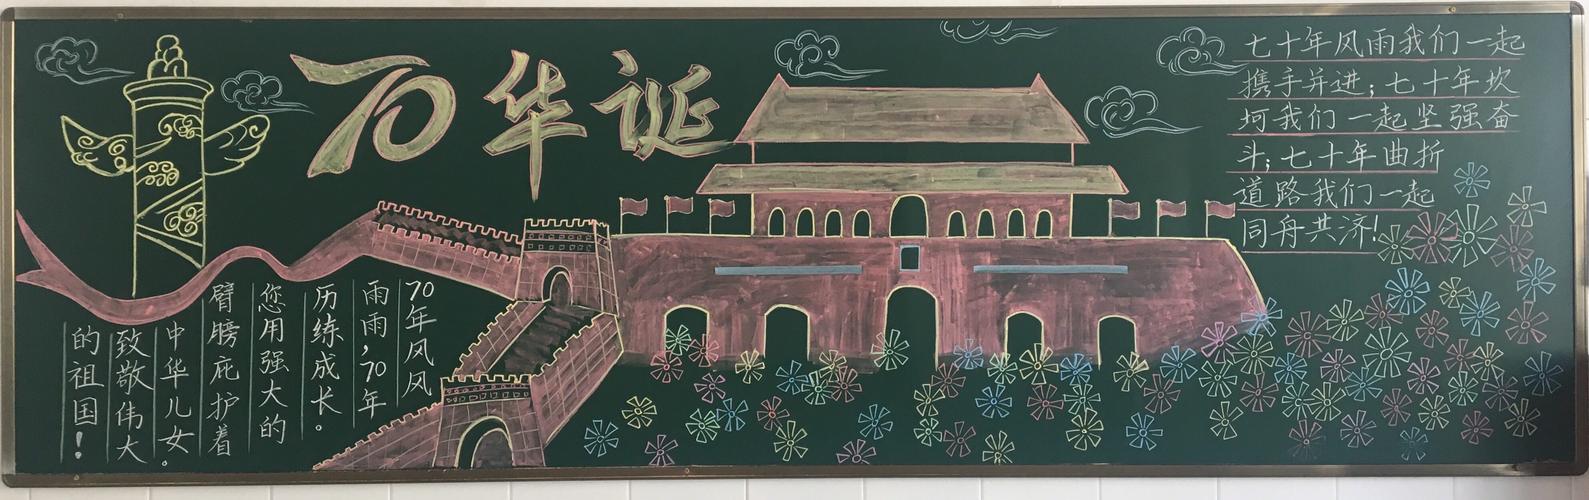 聊城第九中学小学部国庆节专题黑板报展示